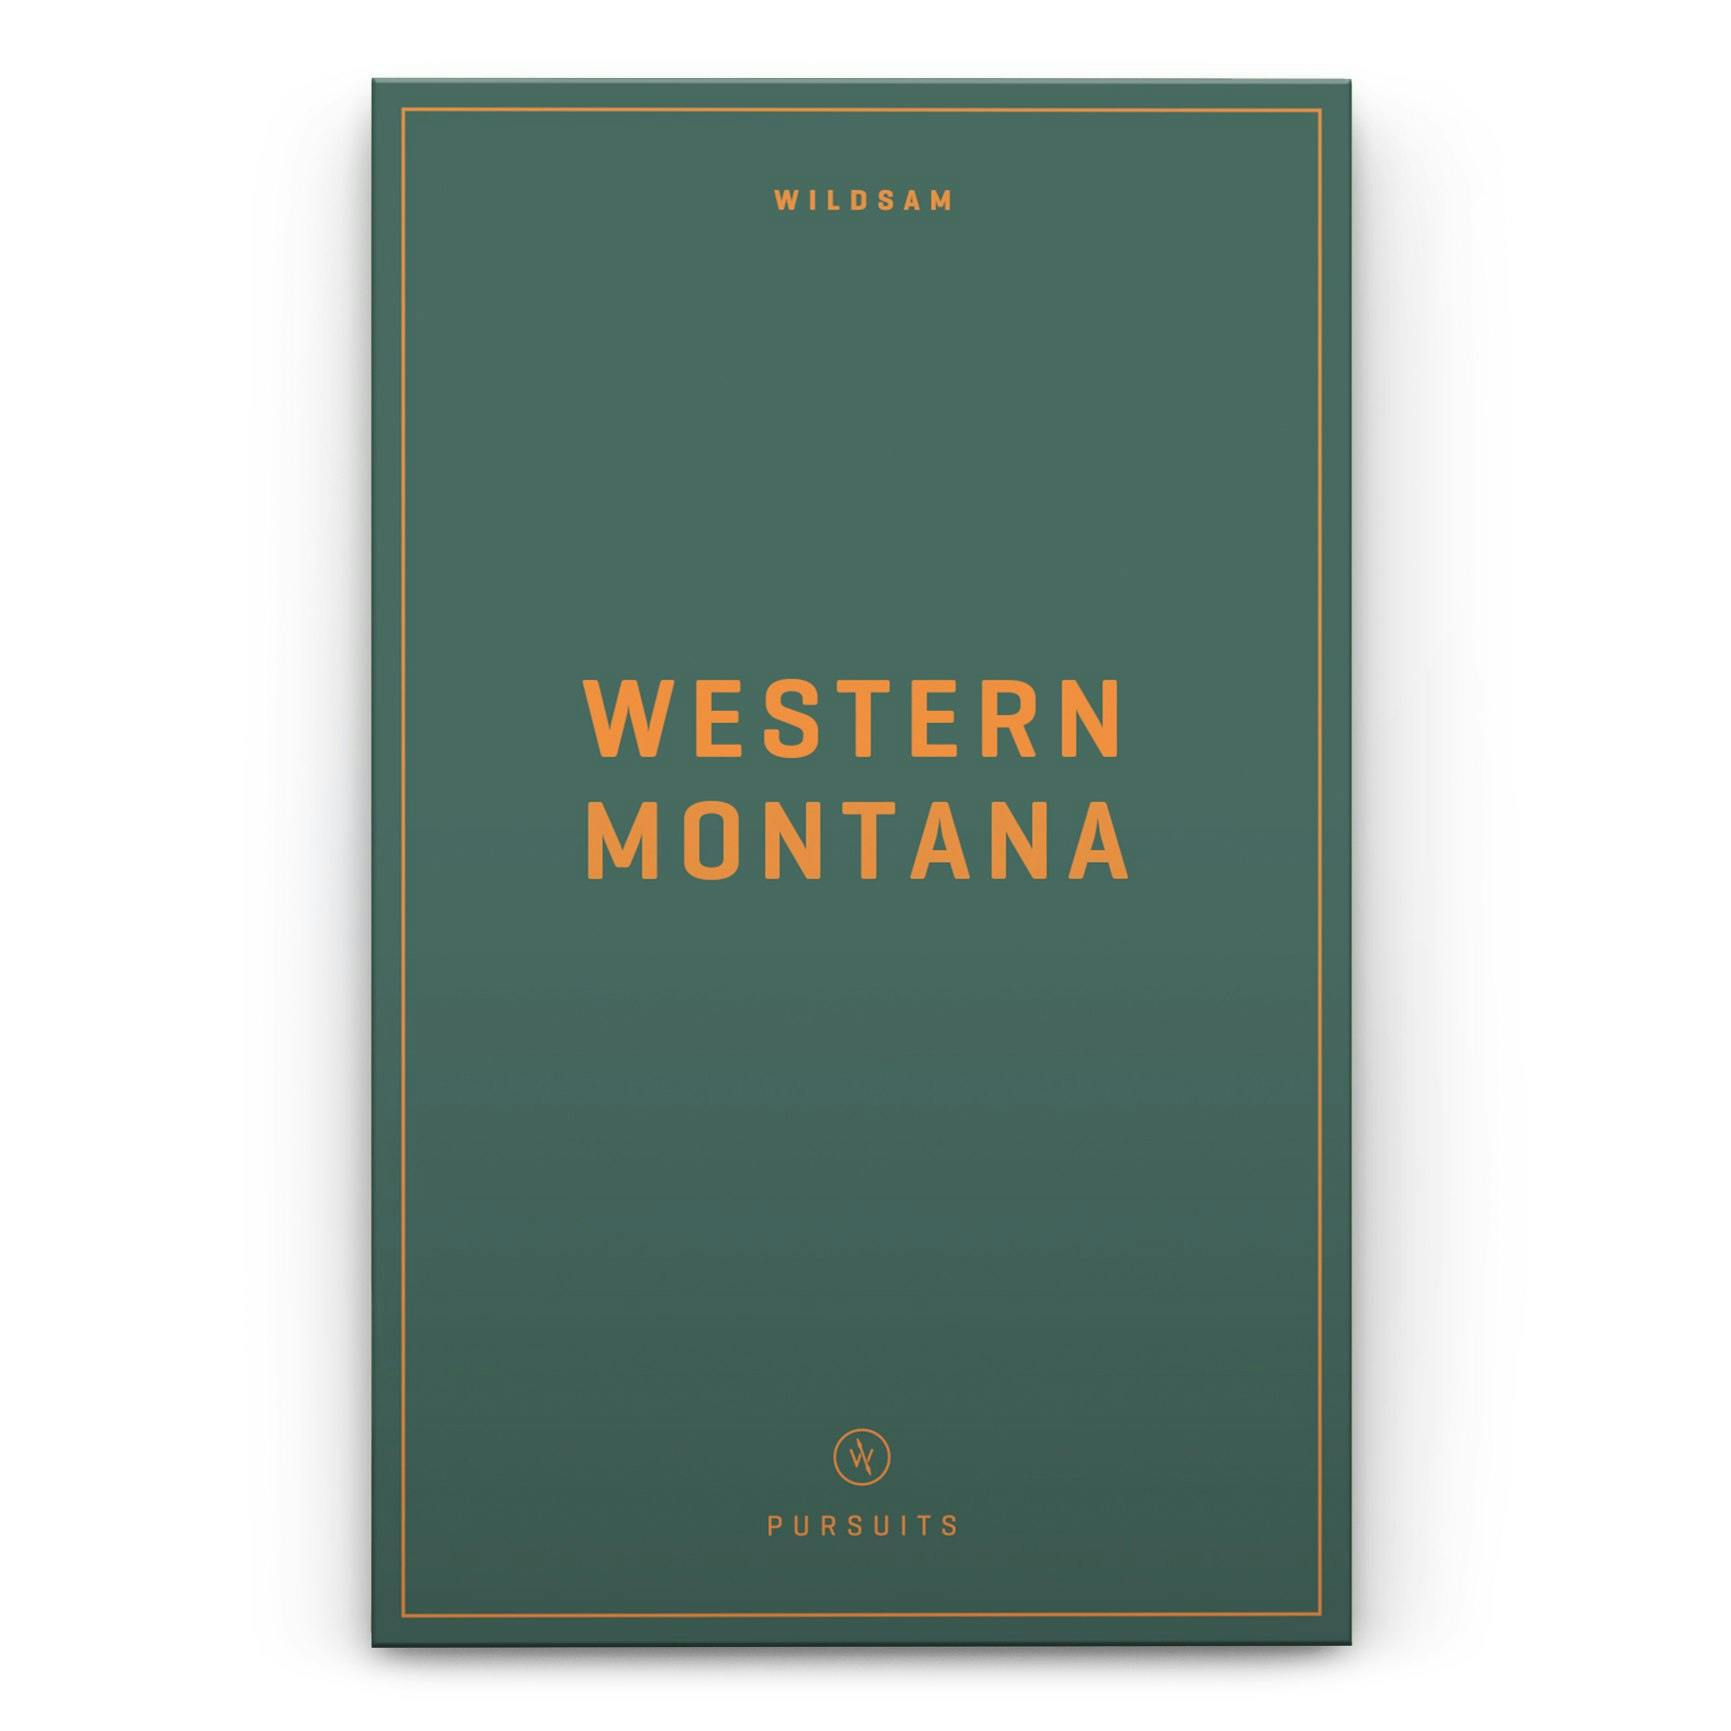 Western Montana Field Guide